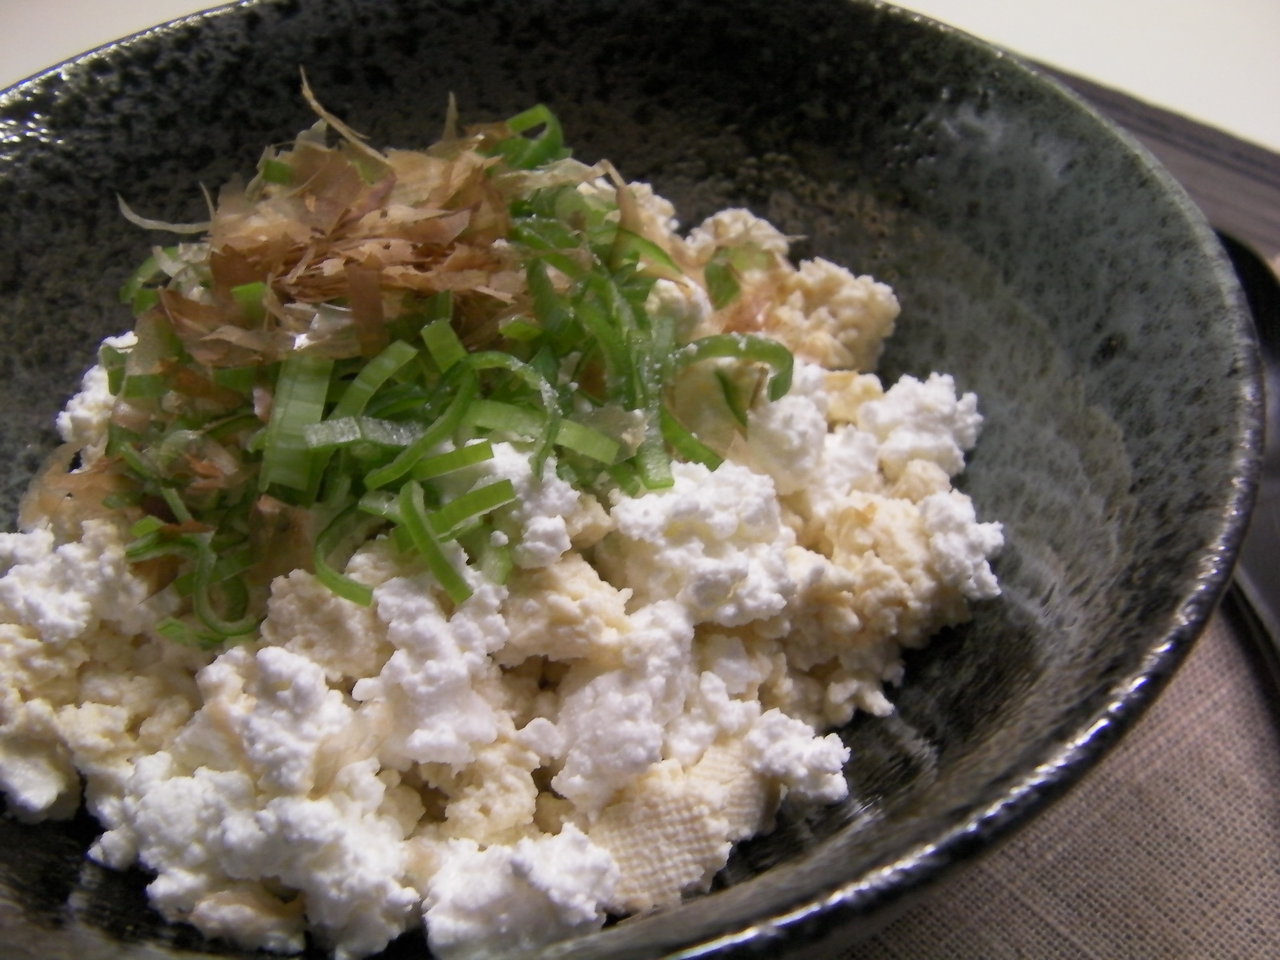 カッテージチーズと水切り豆腐 モロモロコンビのネギおかか 彩月satsukiの料理帖